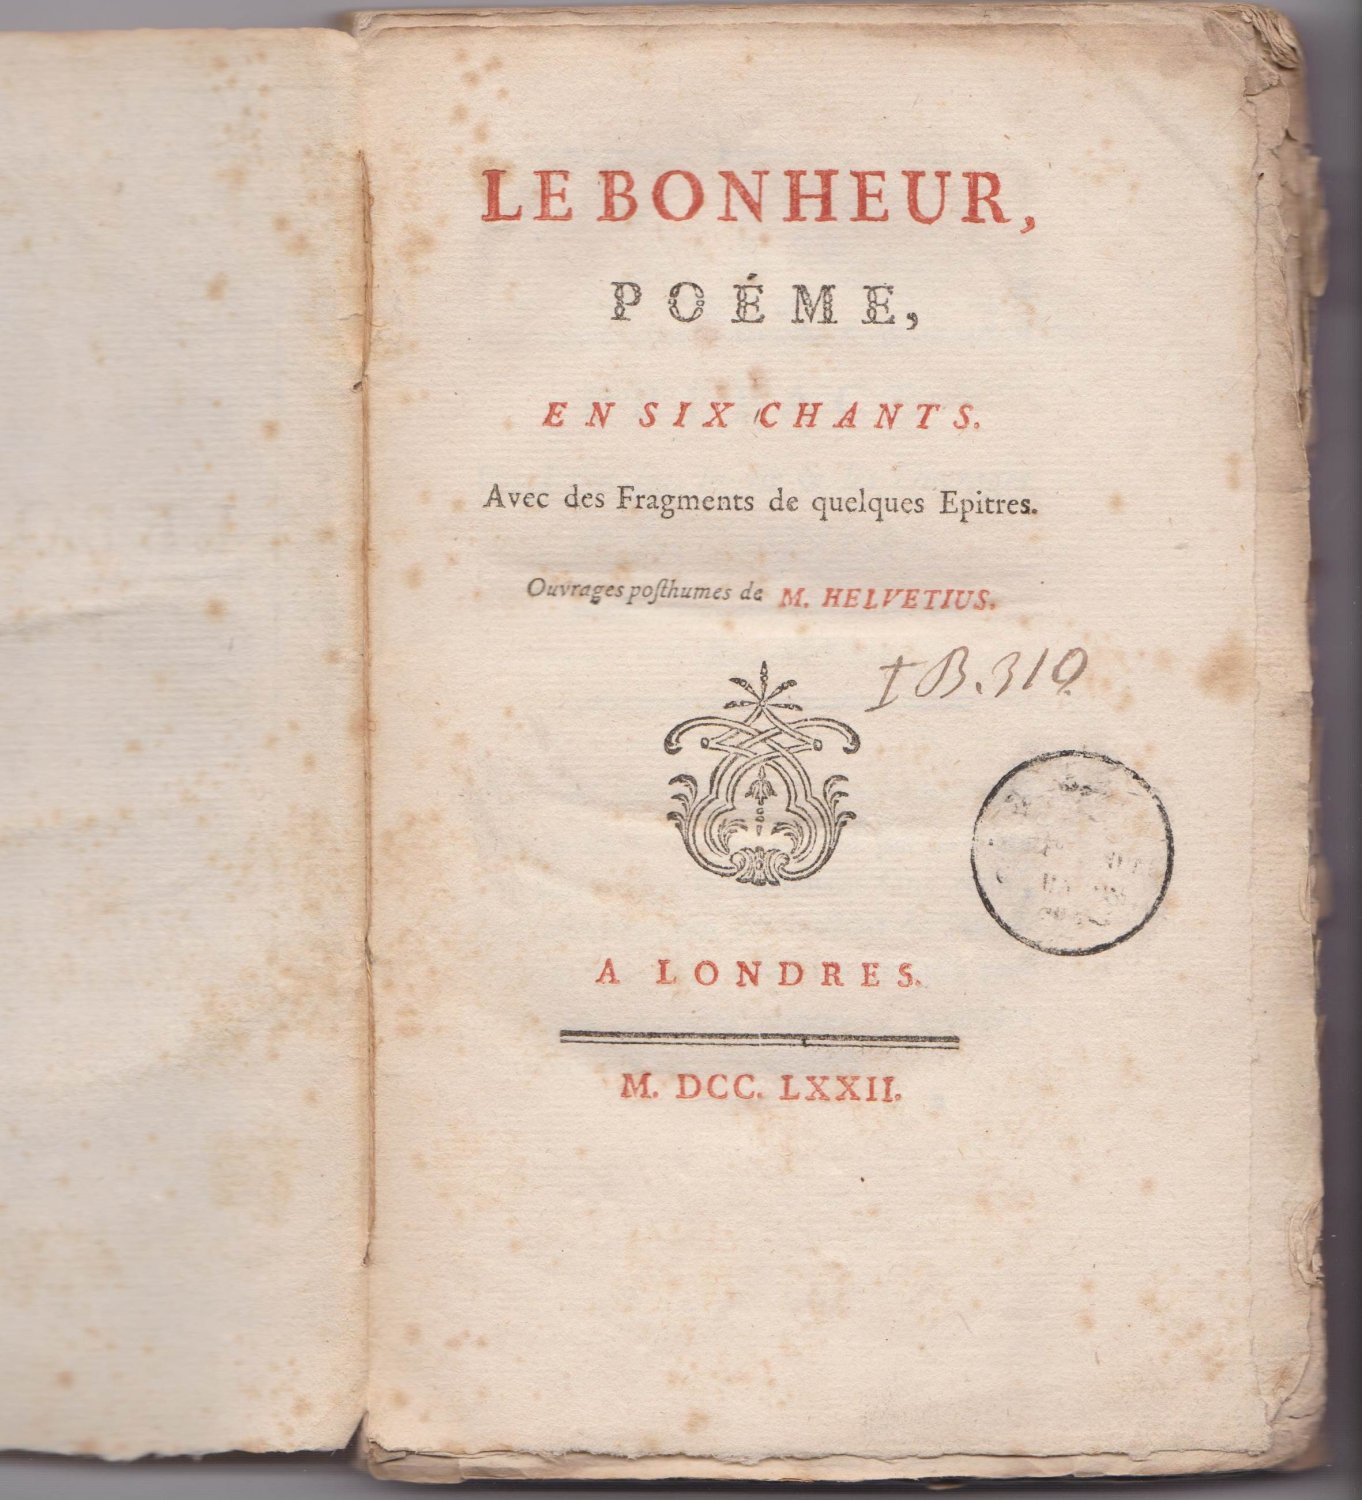 HELVETIUS, M. (i.e. Claude-Adrien Schweitzer):  Le Bonheur, Poéme, en Six Chants. Avec des Fragments de quelques Epitres. Ouvrage posthumes de M. Helvetius. 